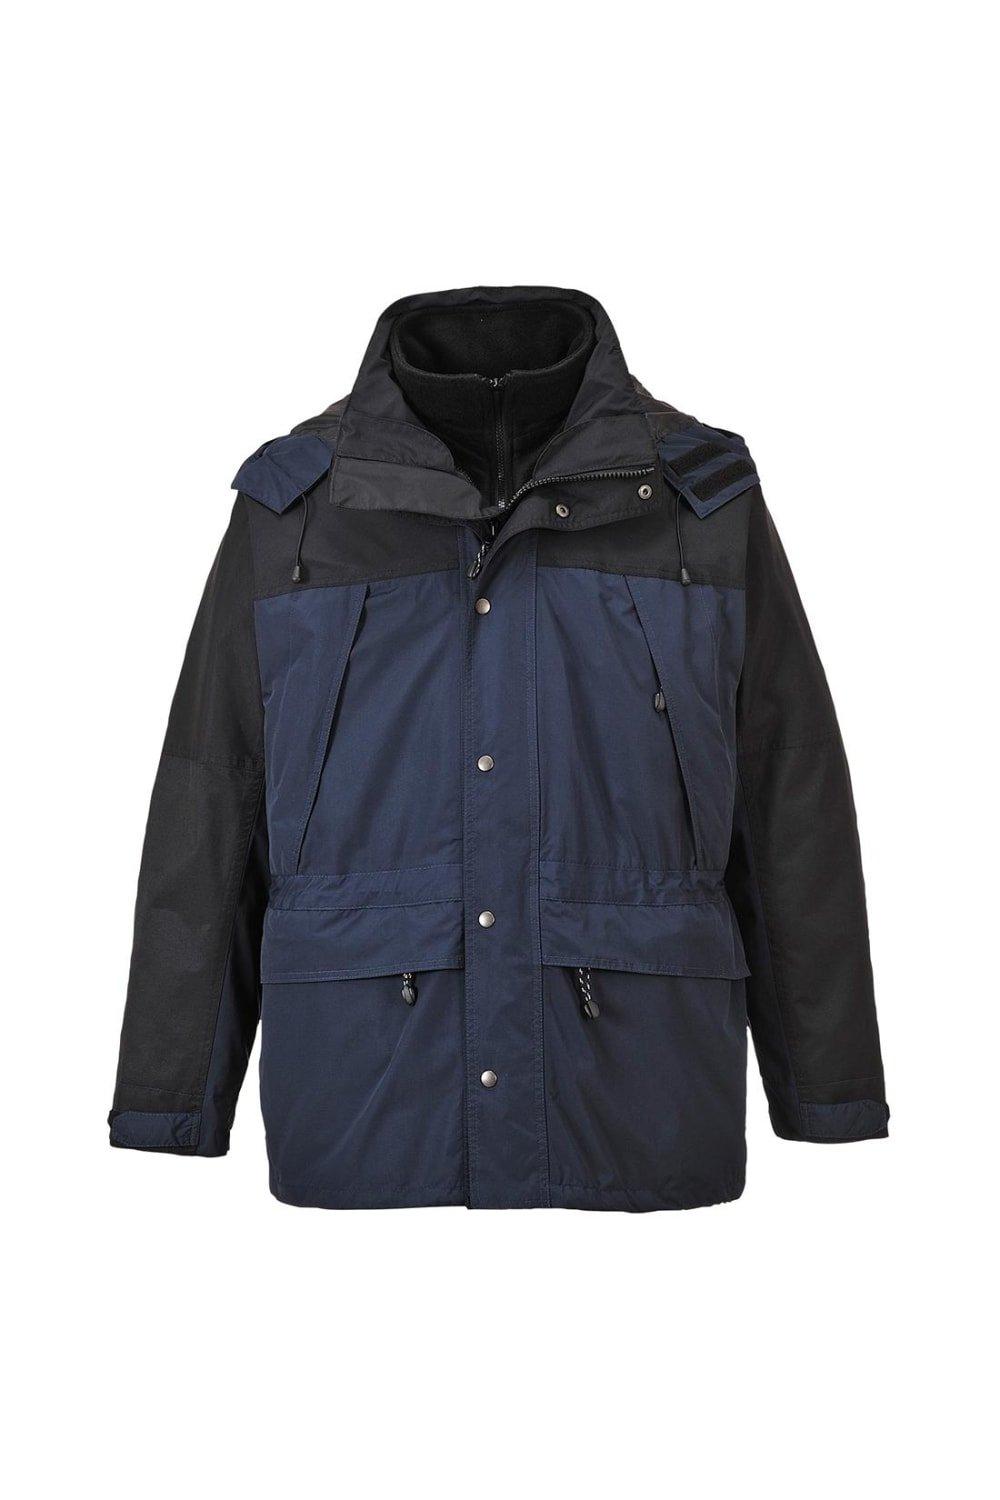 Дышащая куртка Orkney 3 в 1 Portwest, темно-синий пуфик куб макси ткань нейлон цвет коричневый